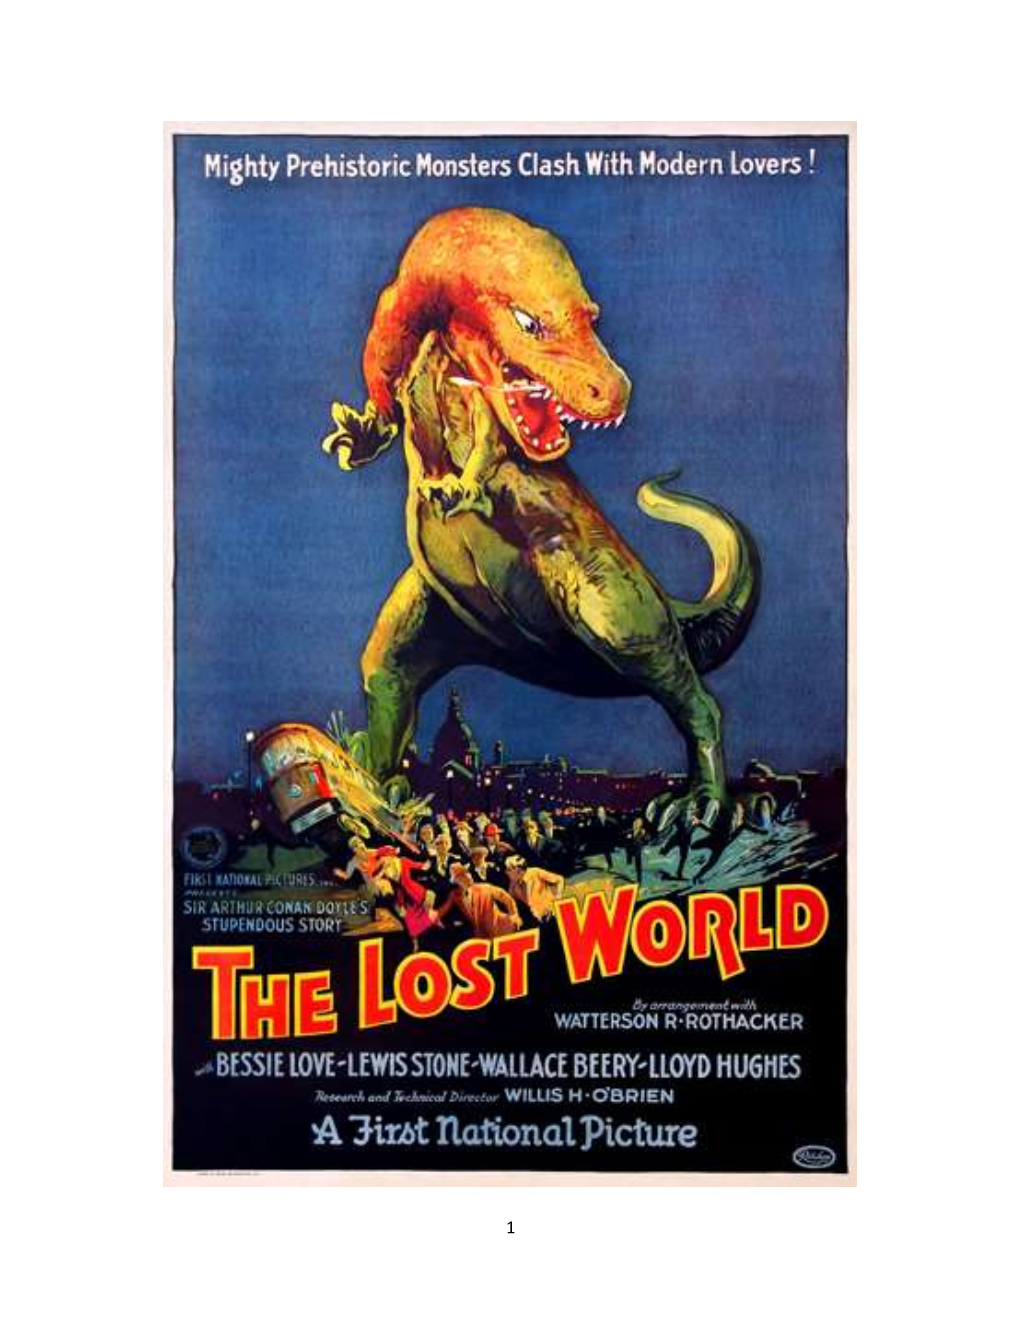 LOST WORLD 1925 Complete Script